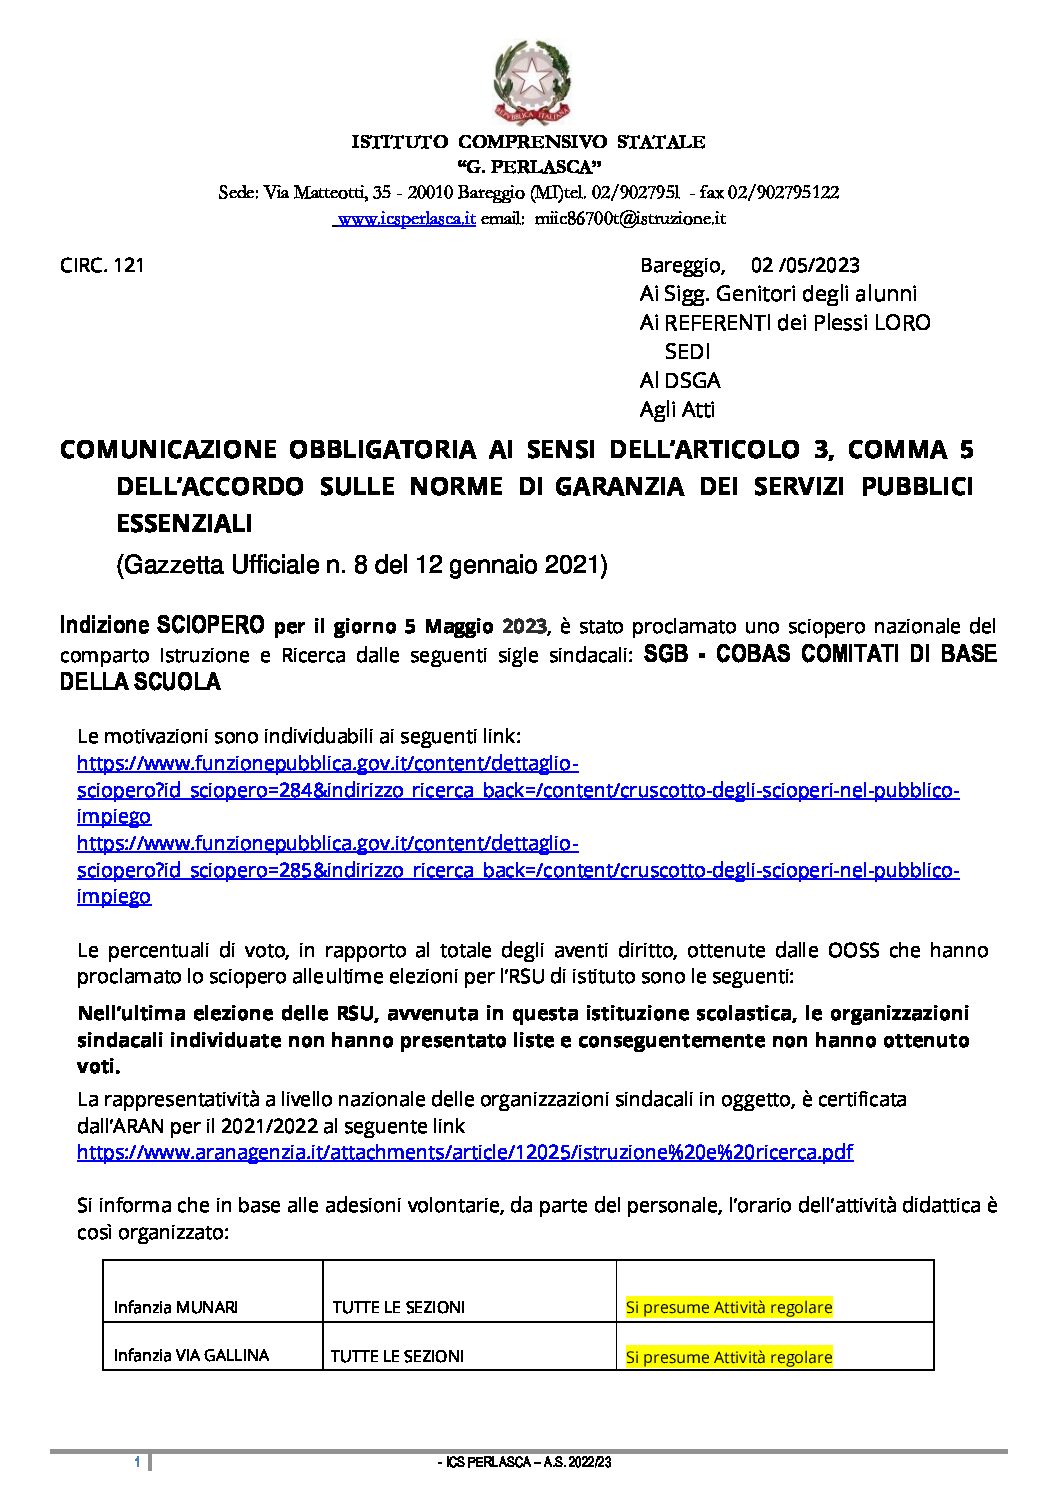 121 Circ. COMUNICAZIONE GENITORI SCIOPERO 05.05.23